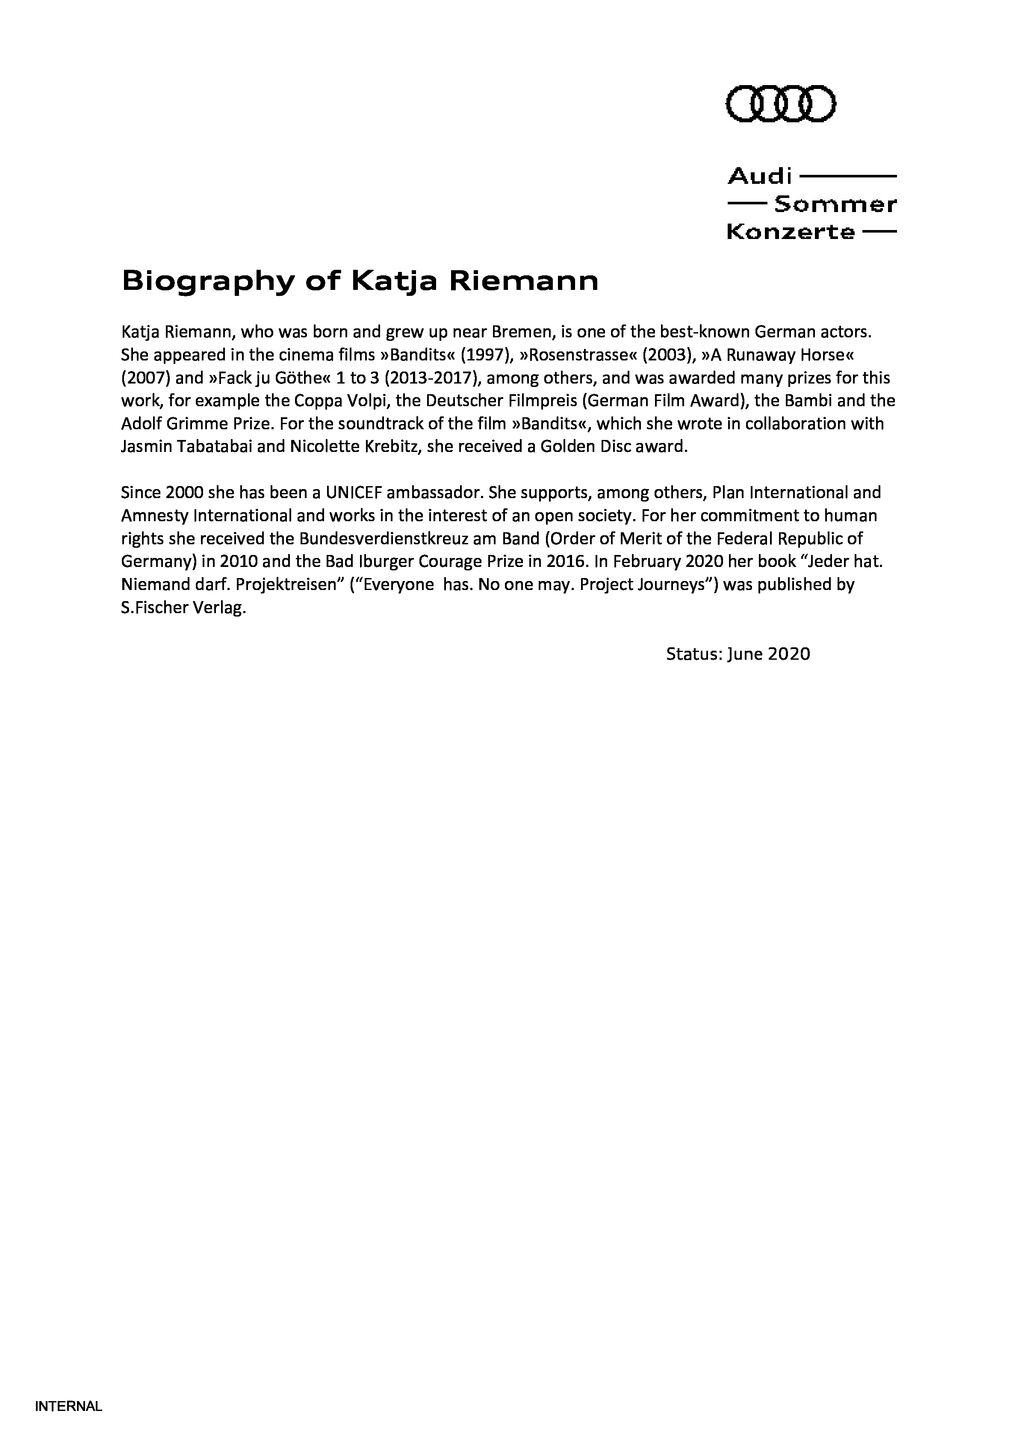 Biography Katja Riemann